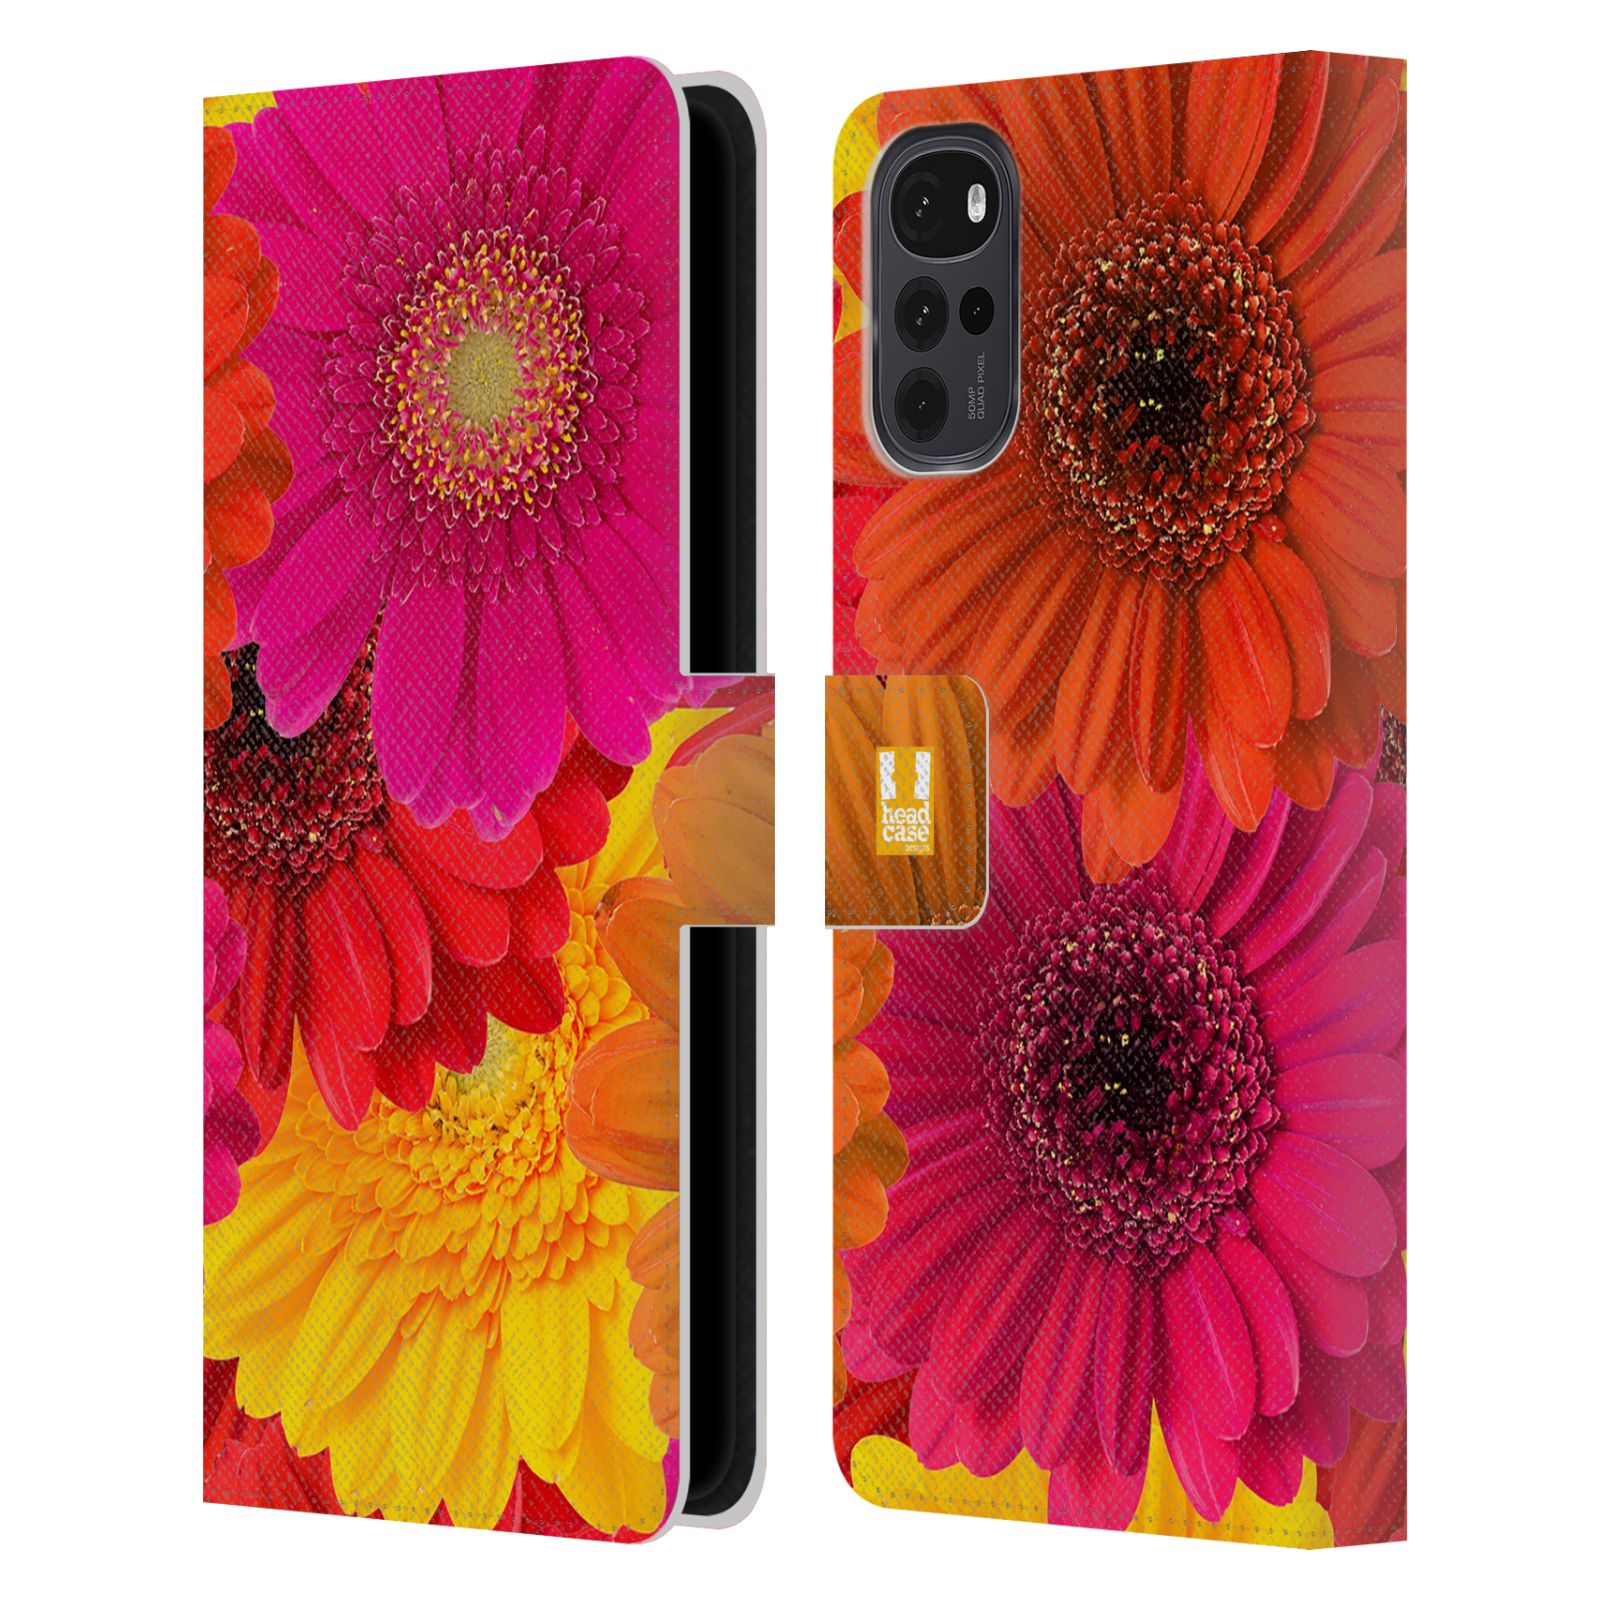 Pouzdro HEAD CASE na mobil Motorola Moto G22 květy foto fialová, oranžová GERBERA